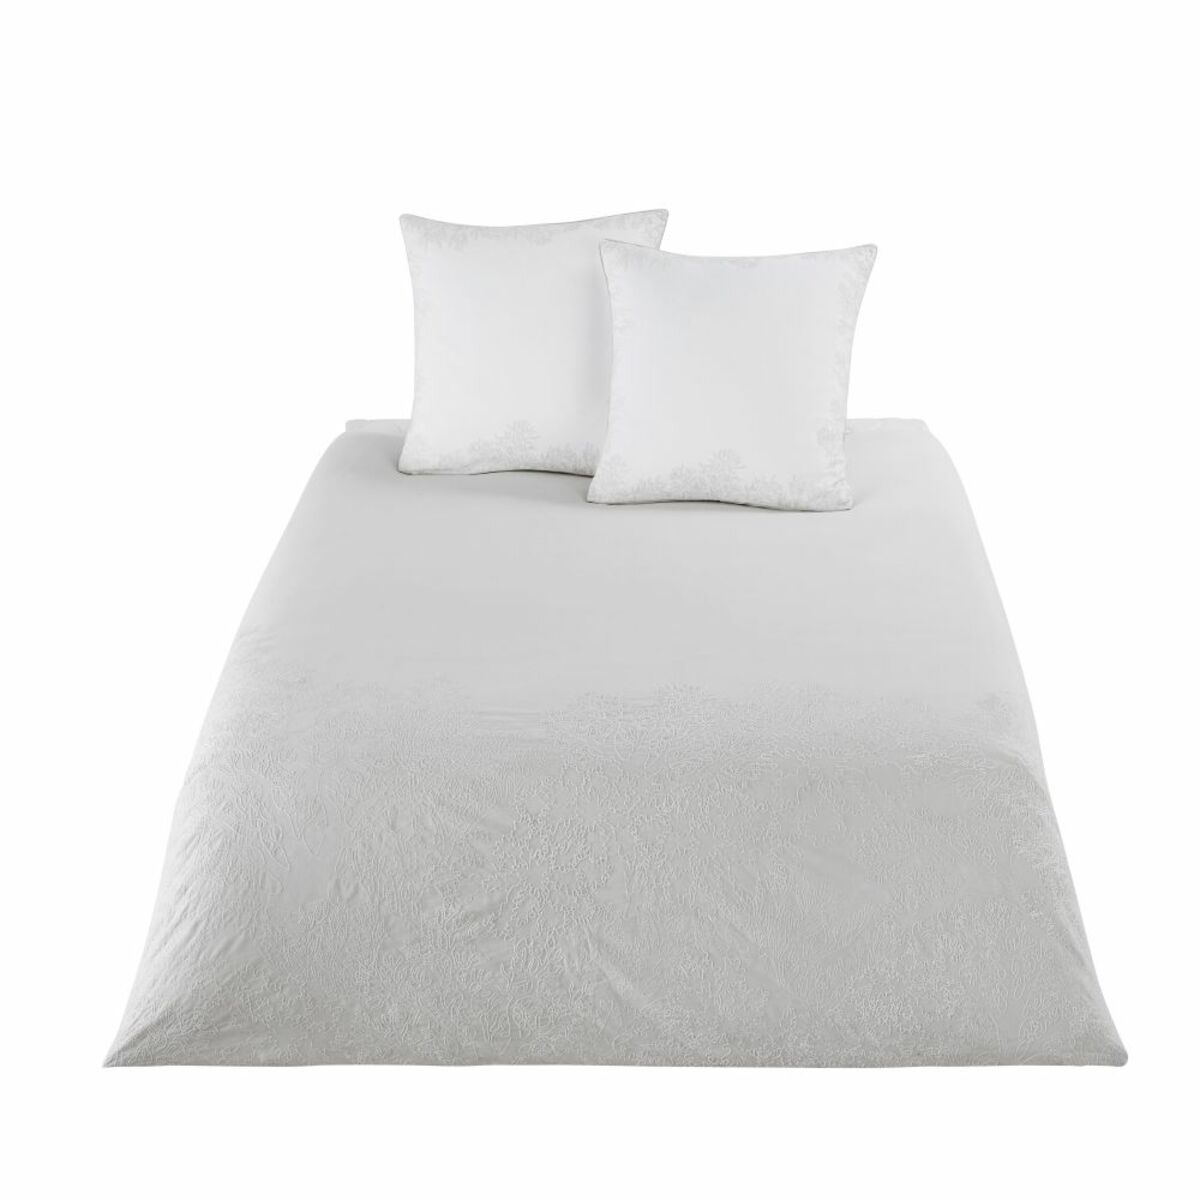 Juego de cama de algodón beige con motivos bordados blancos 220x240